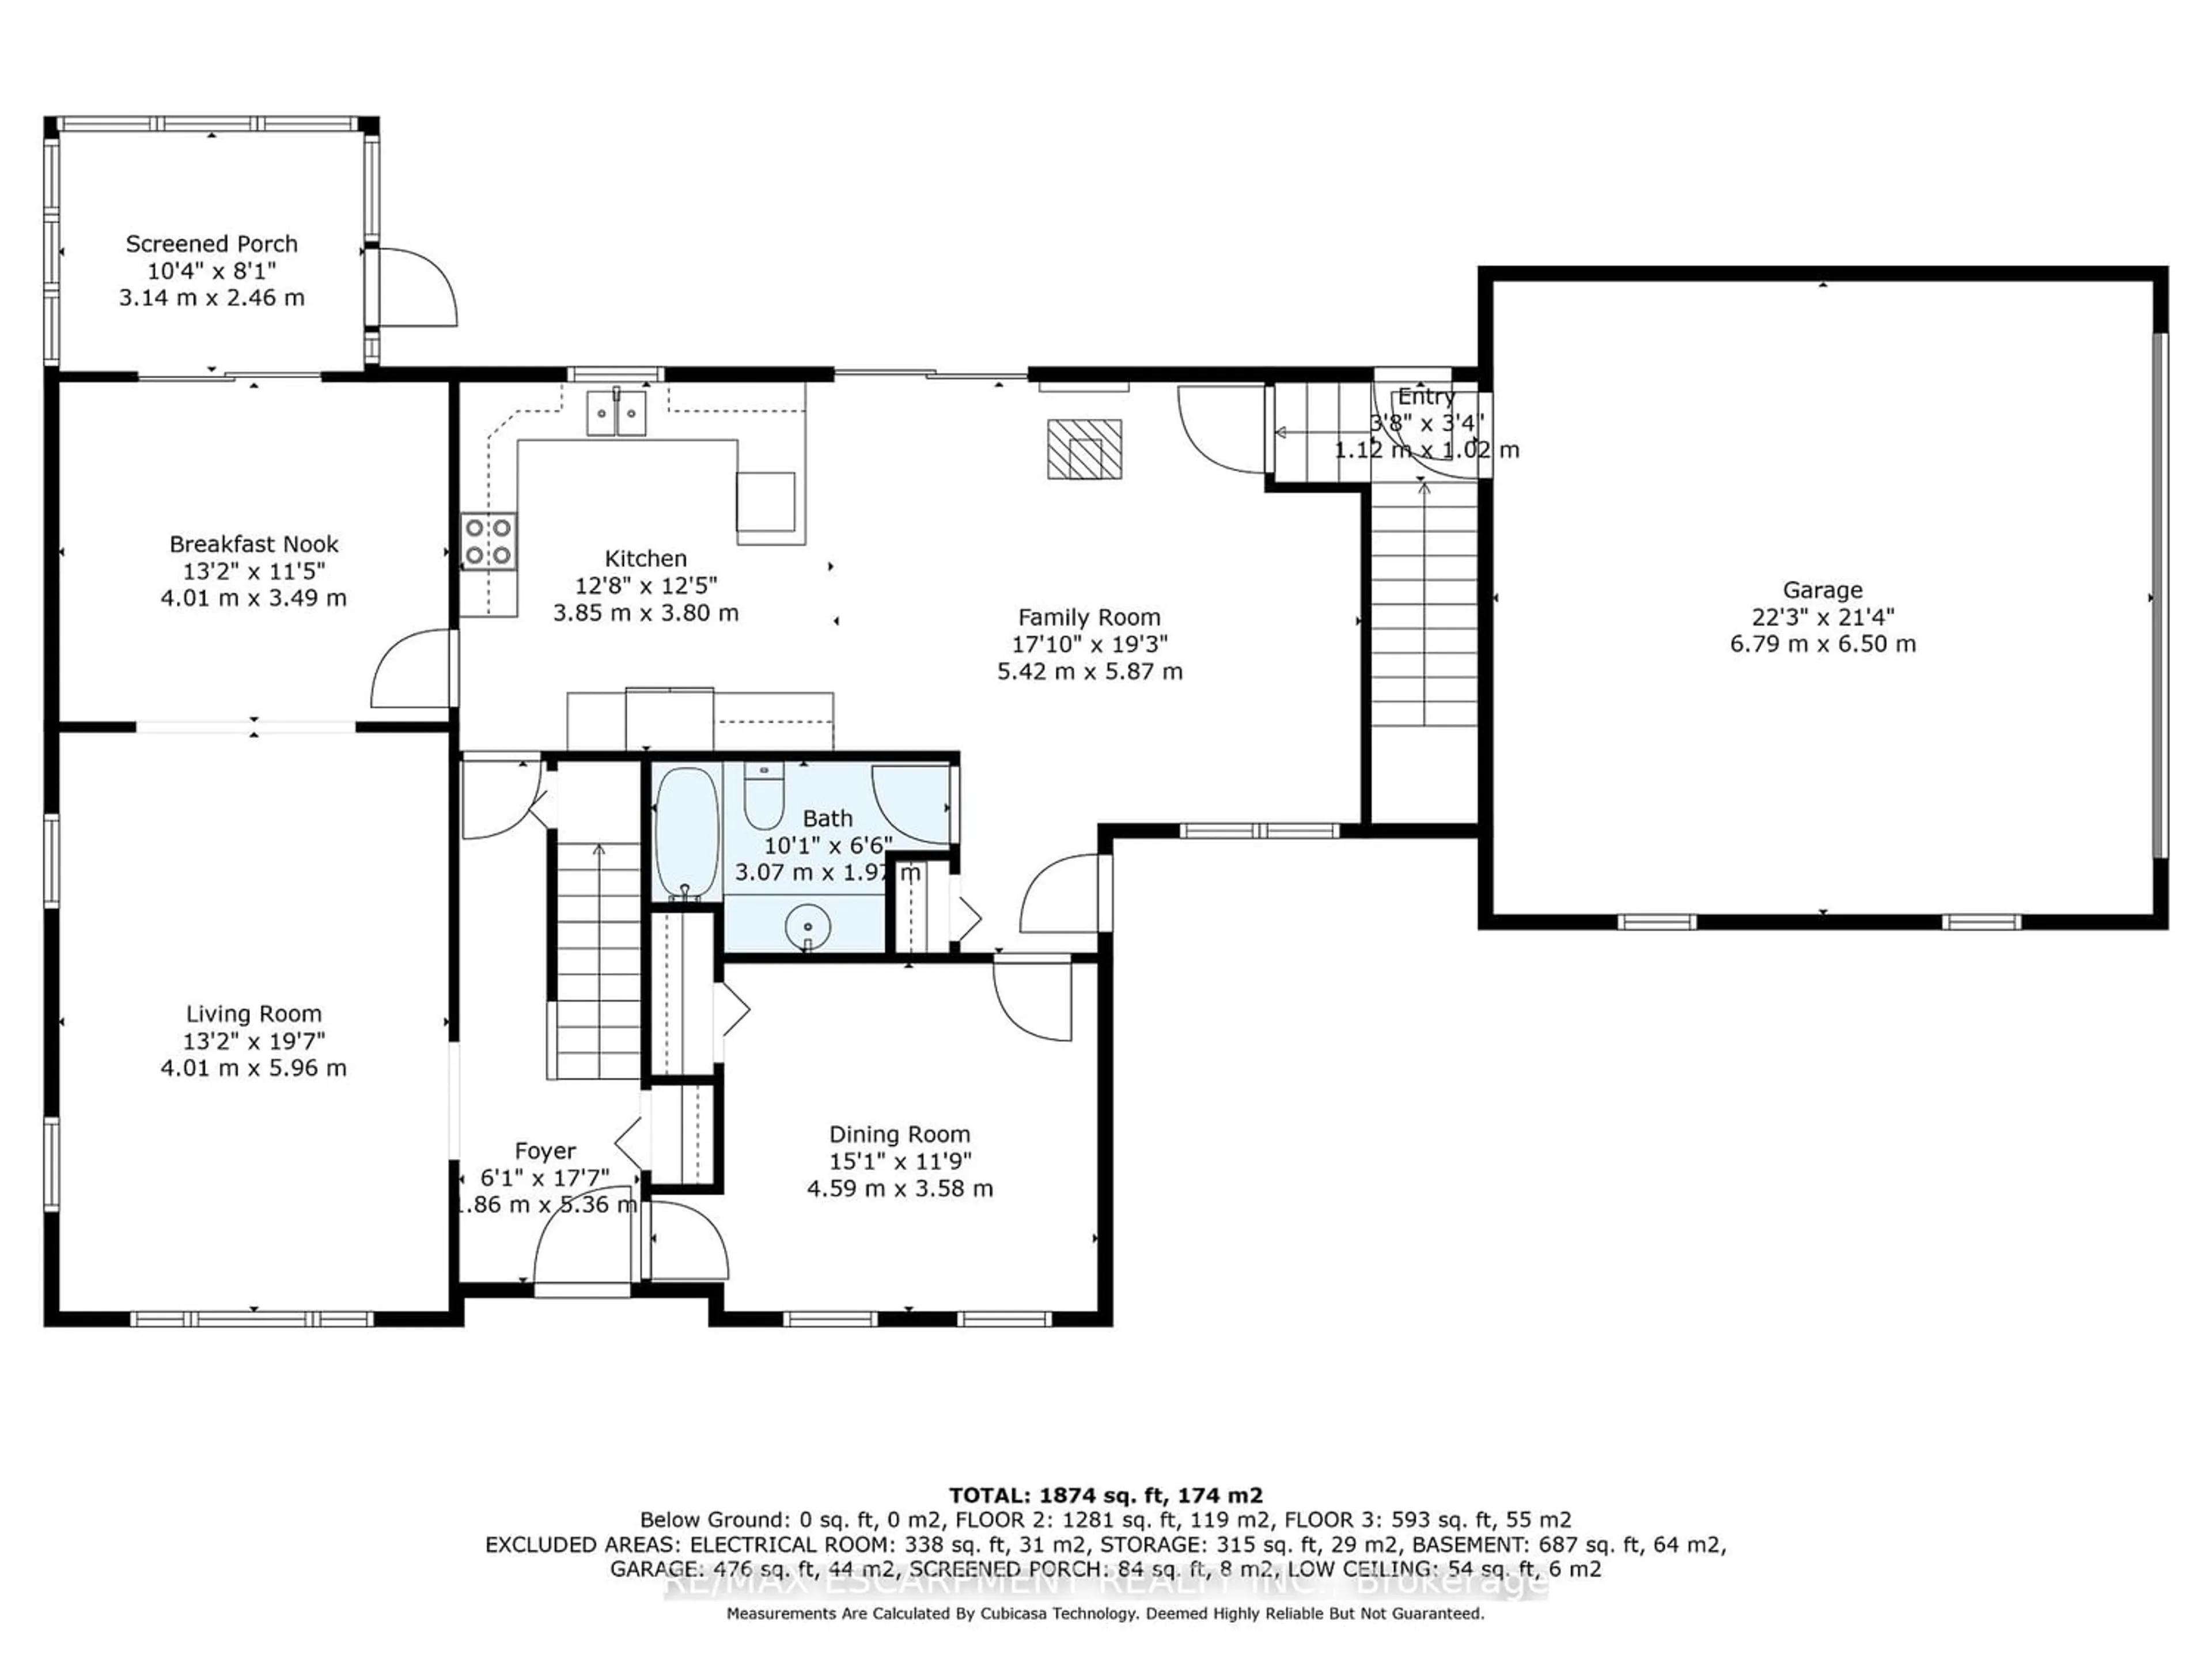 Floor plan for 376 Mcdowell Rd, Norfolk Ontario N3Y 4J9